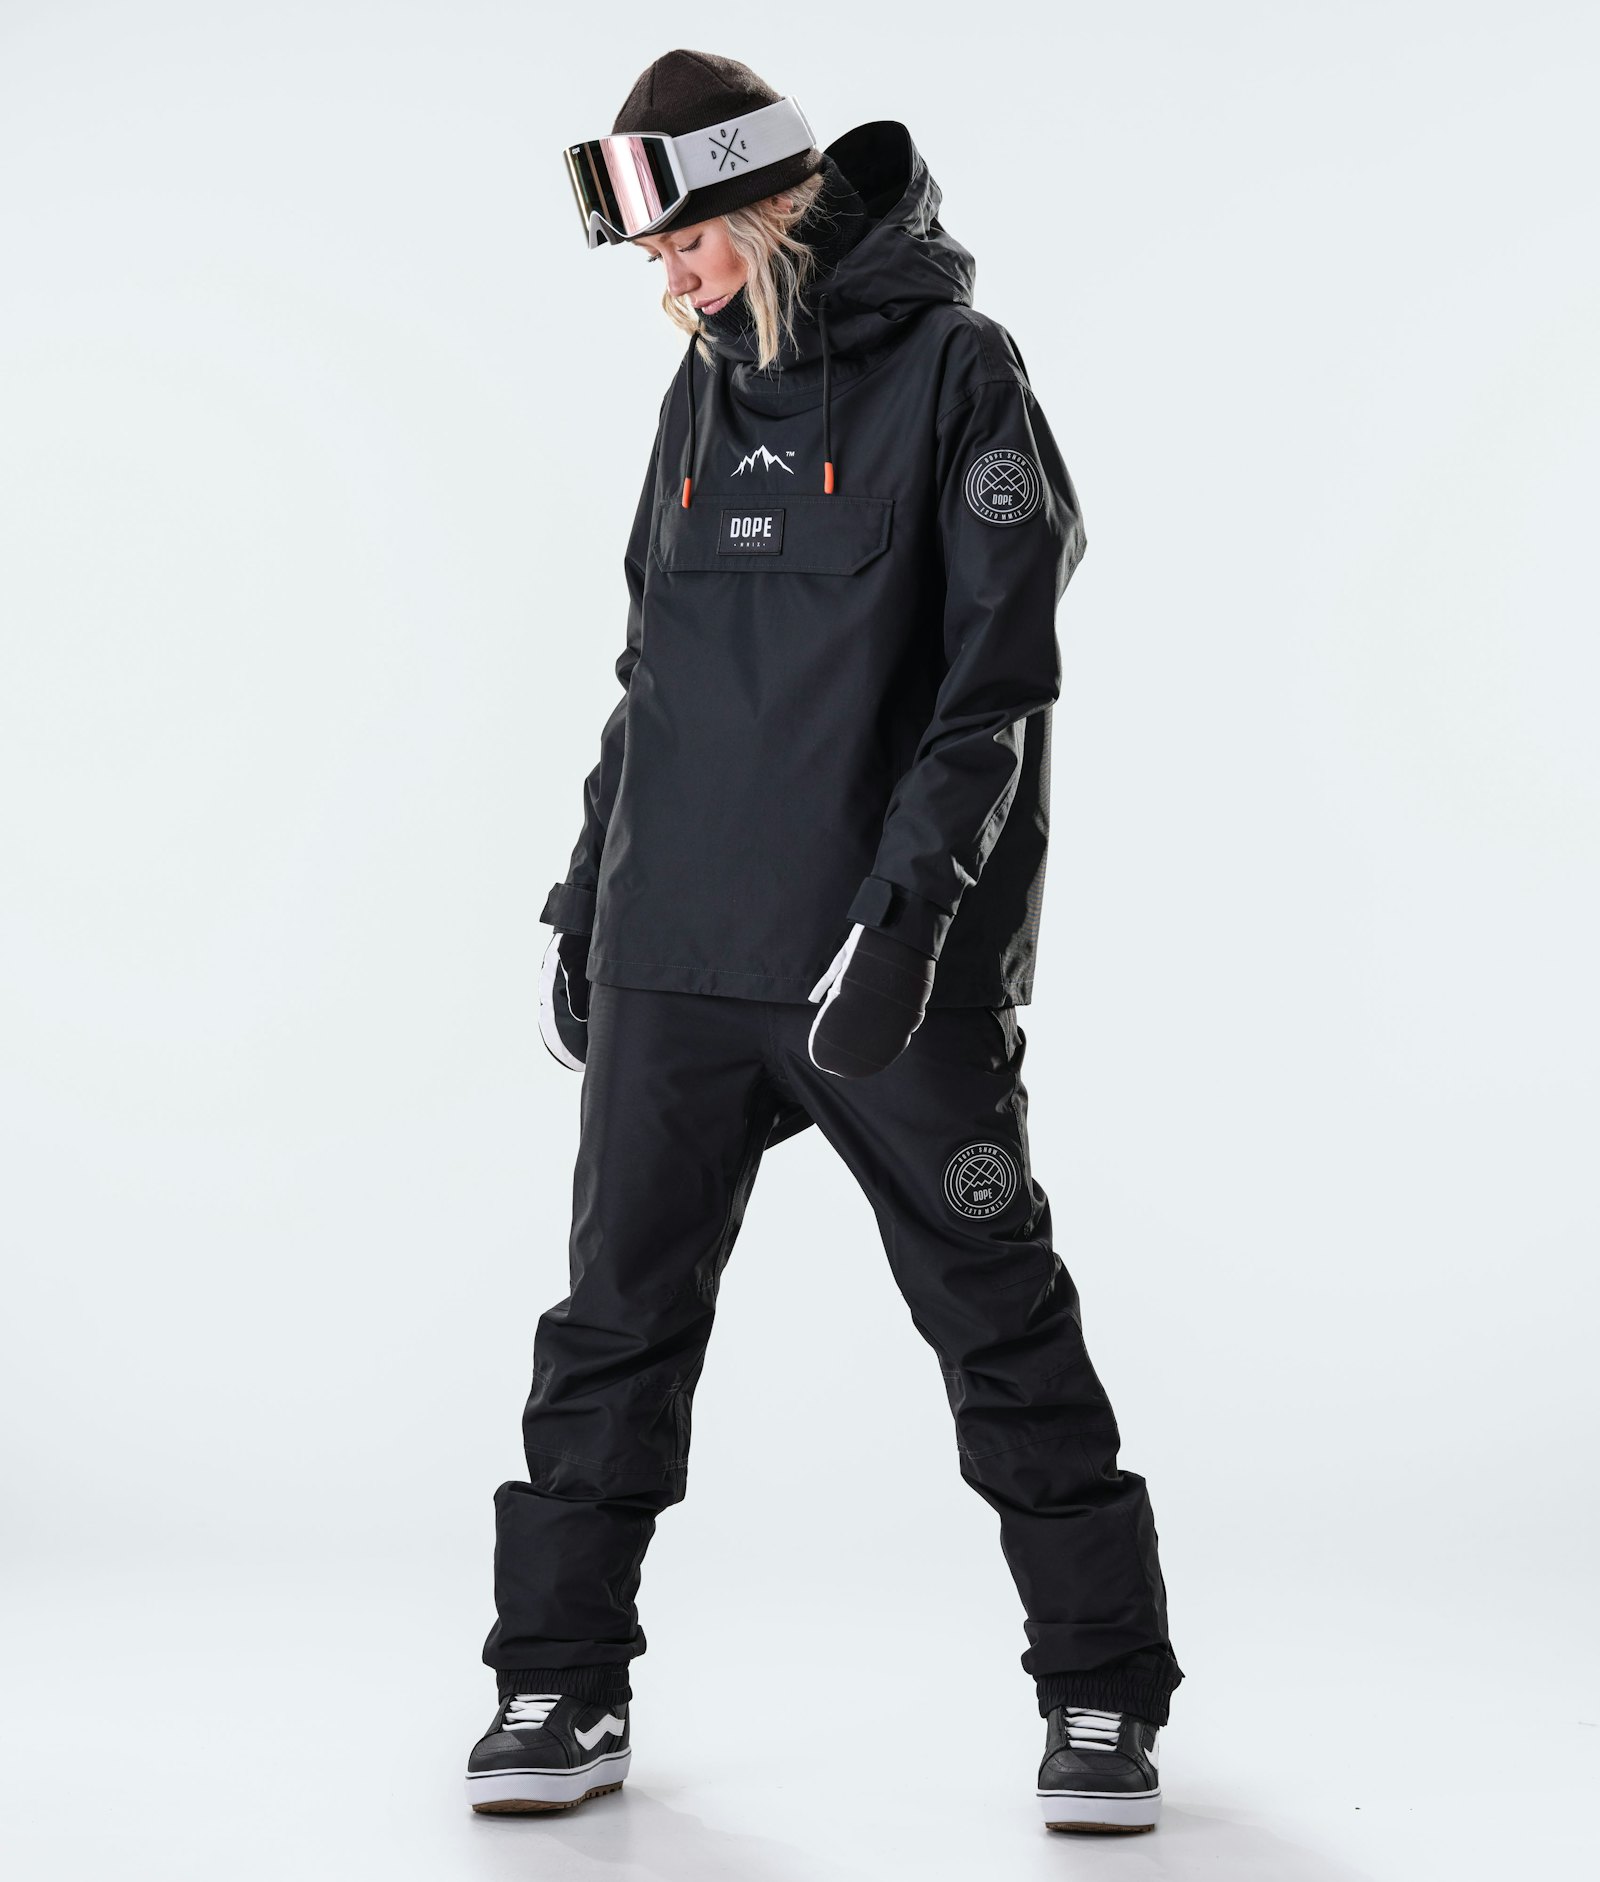 Blizzard W 2020 Snowboard Jacket Women Black